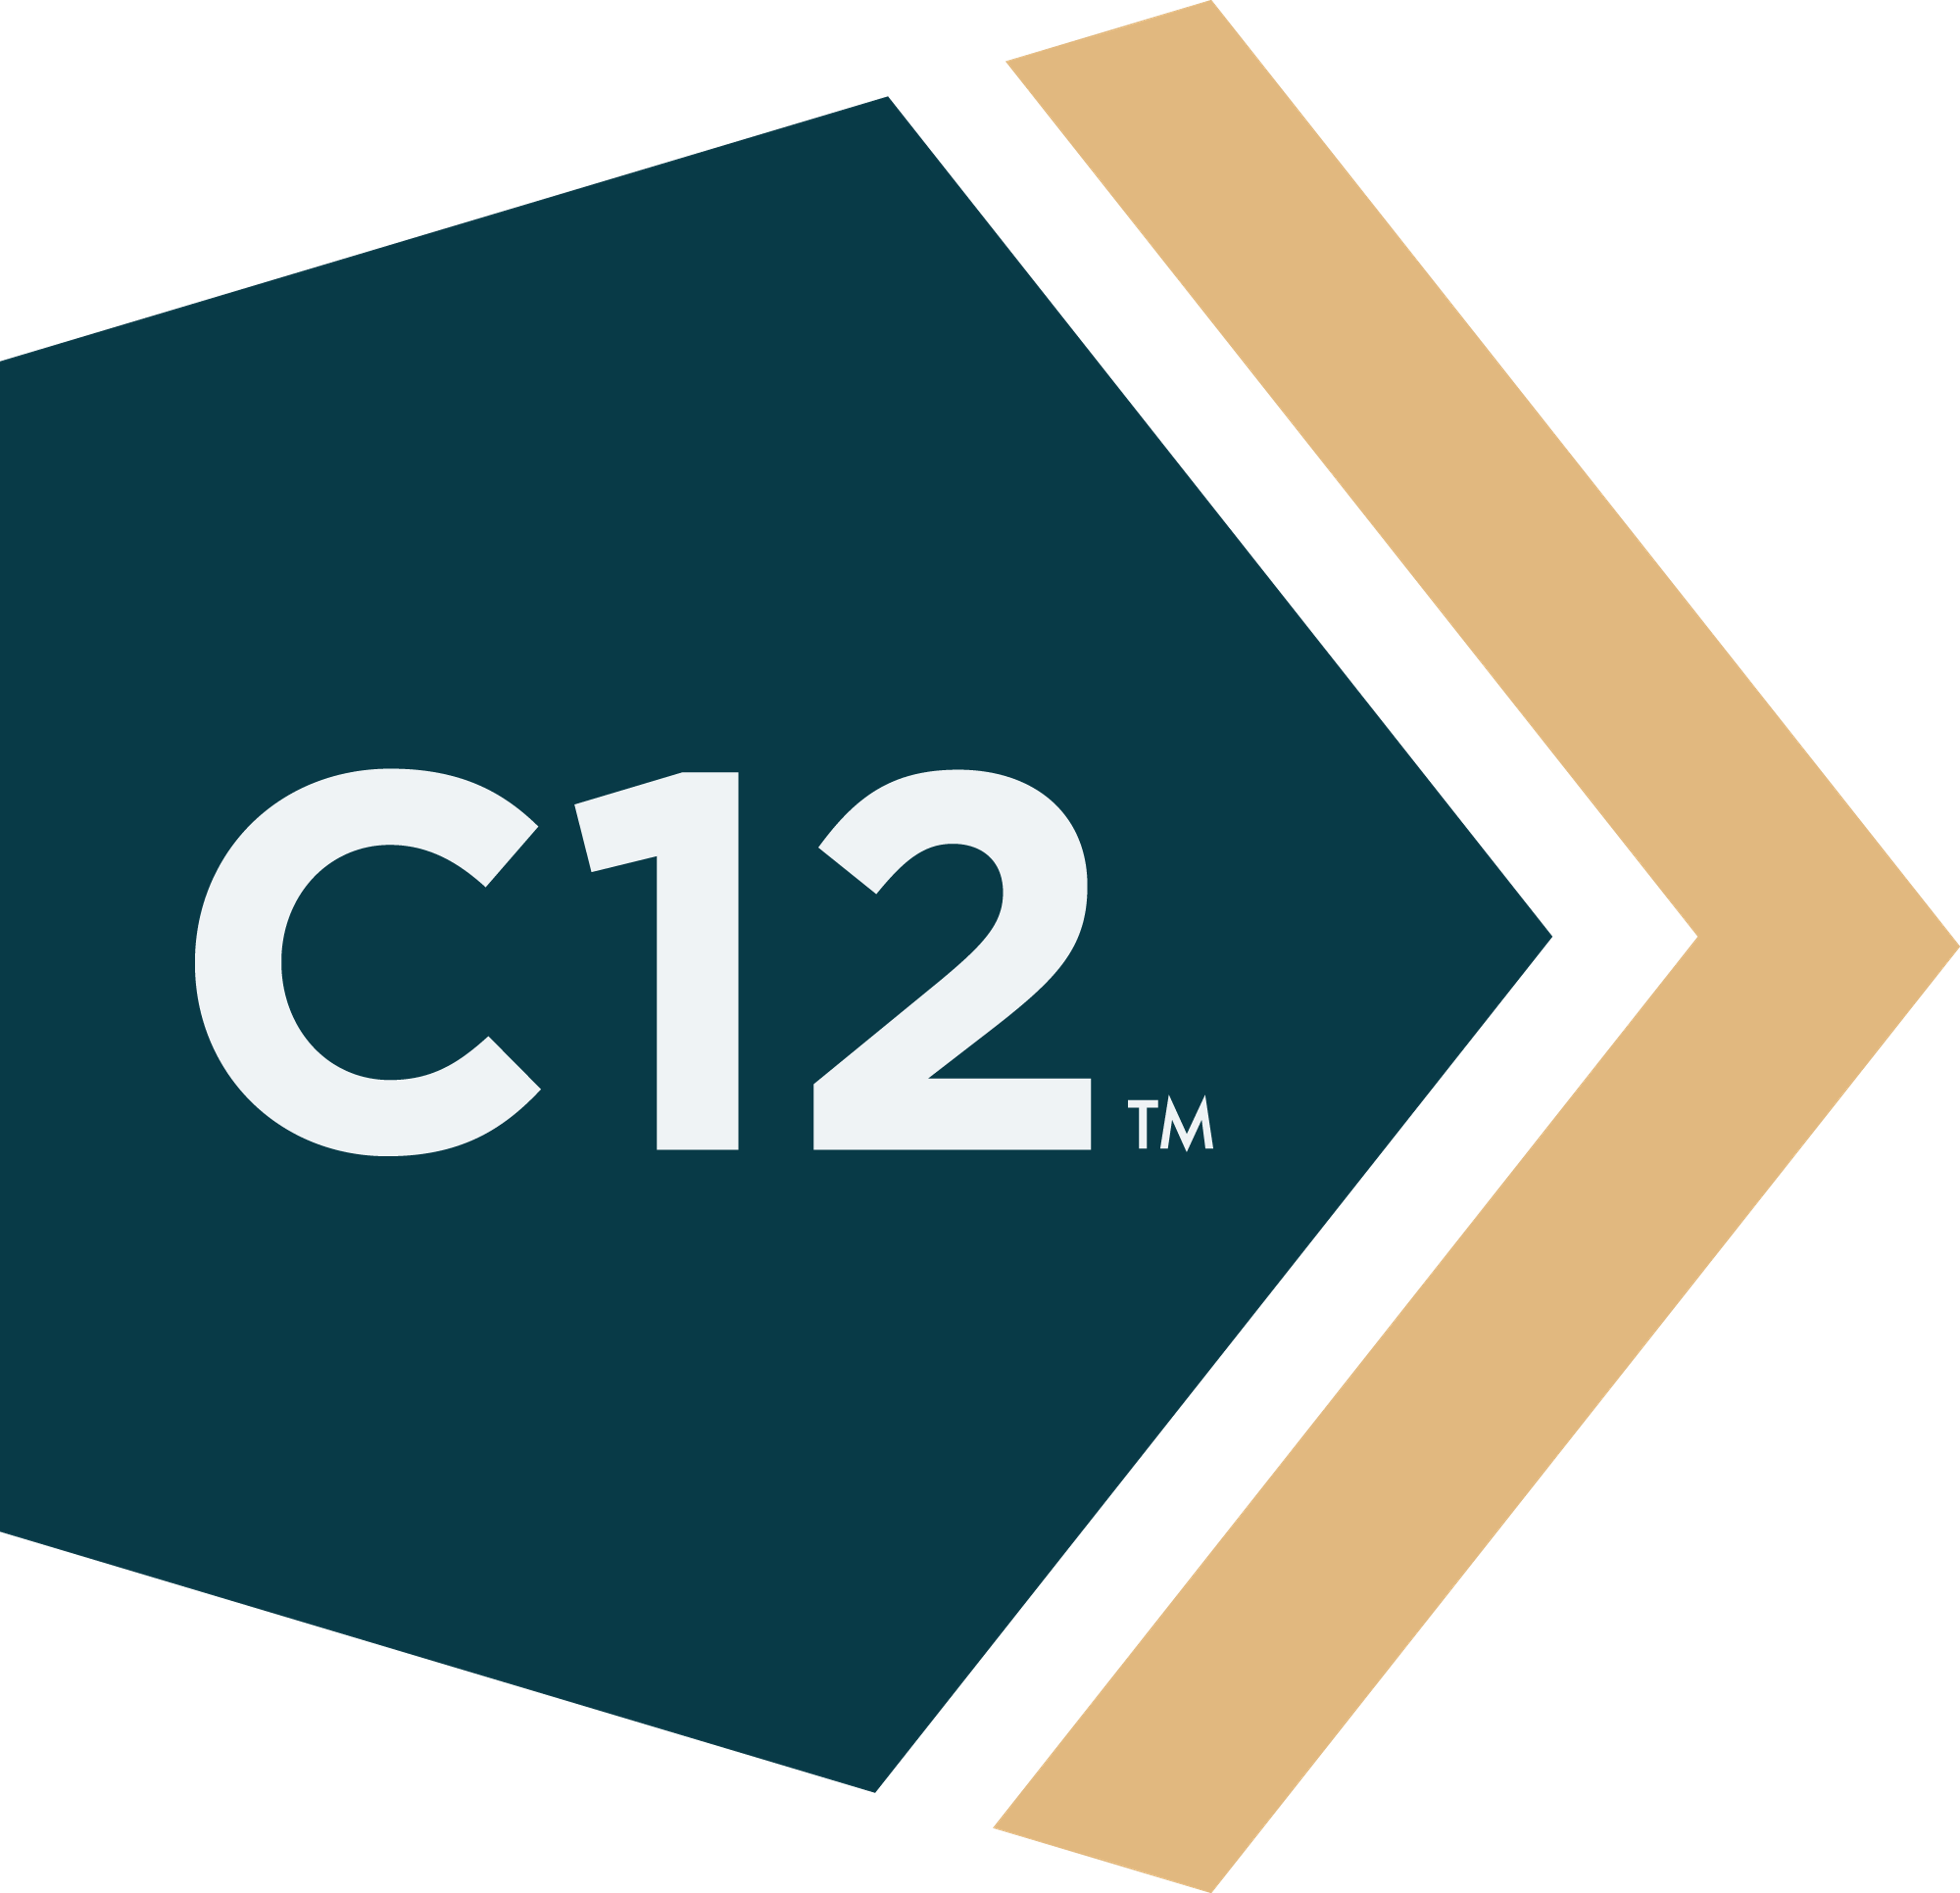 C12 Logo